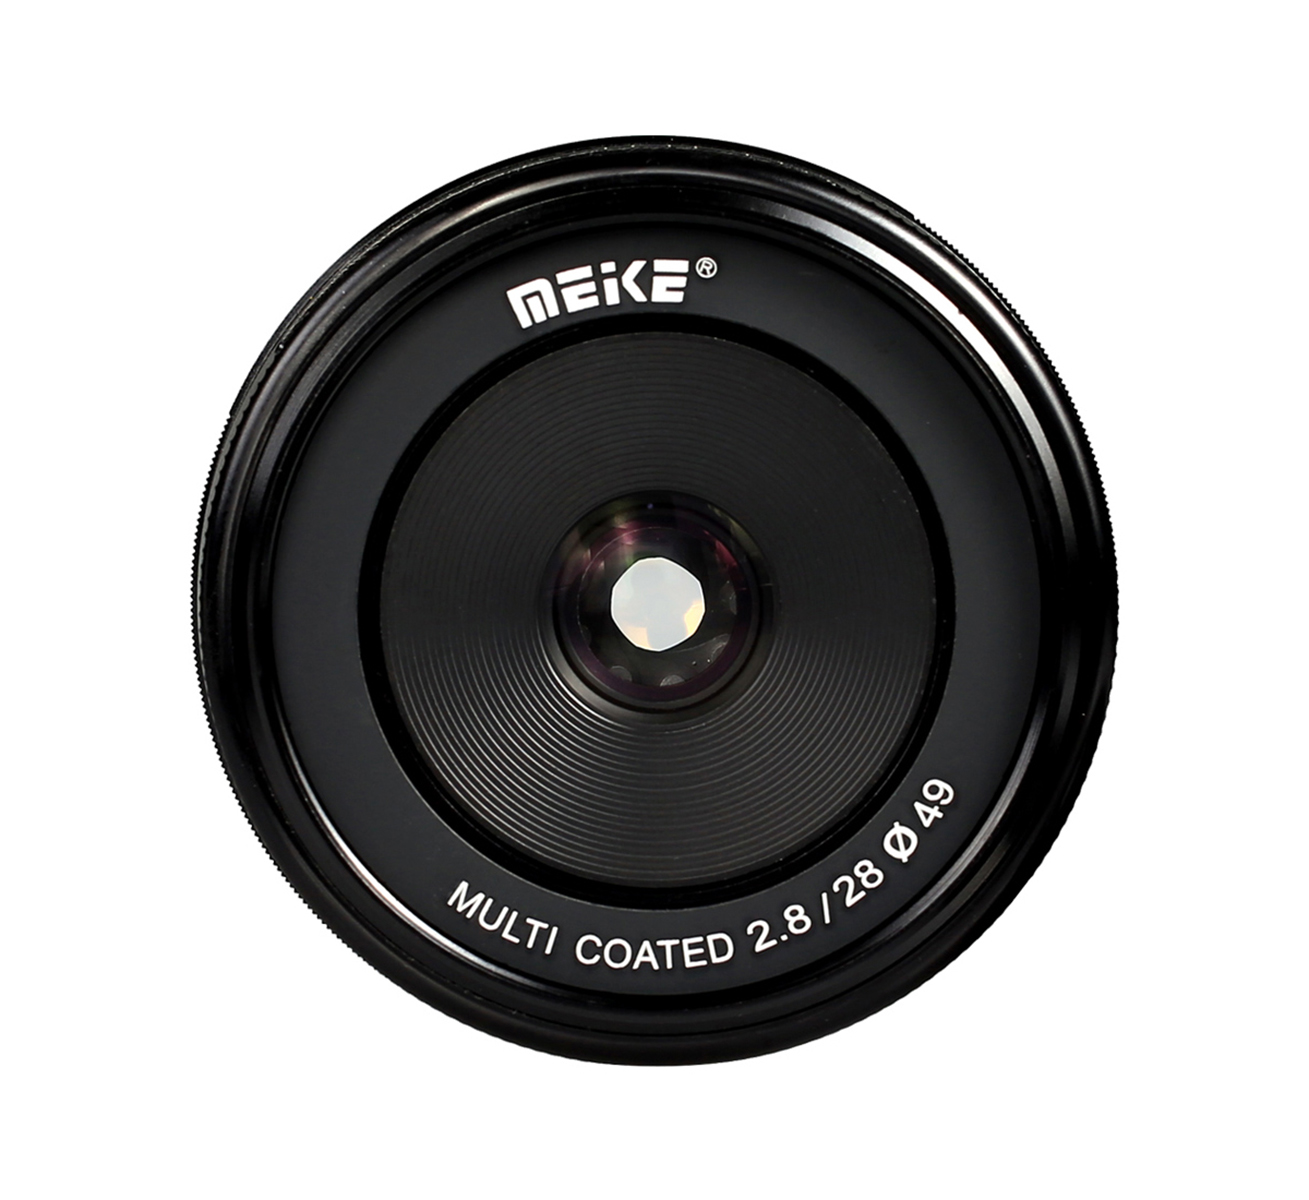 Meike 28mm F2.8 Objektiv multicoated für Micro 4/3